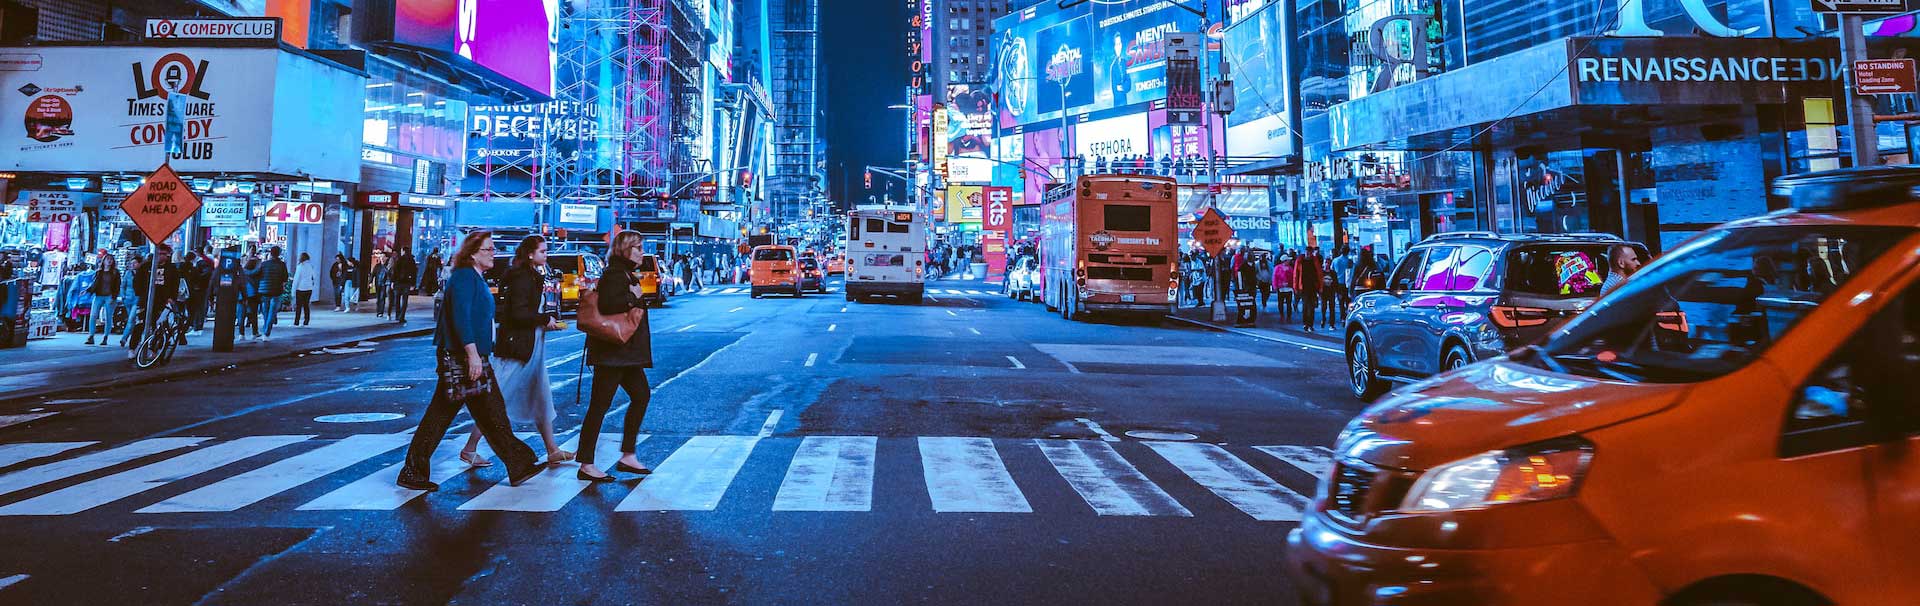 Nueva York Times Square personas en el paso de peatones